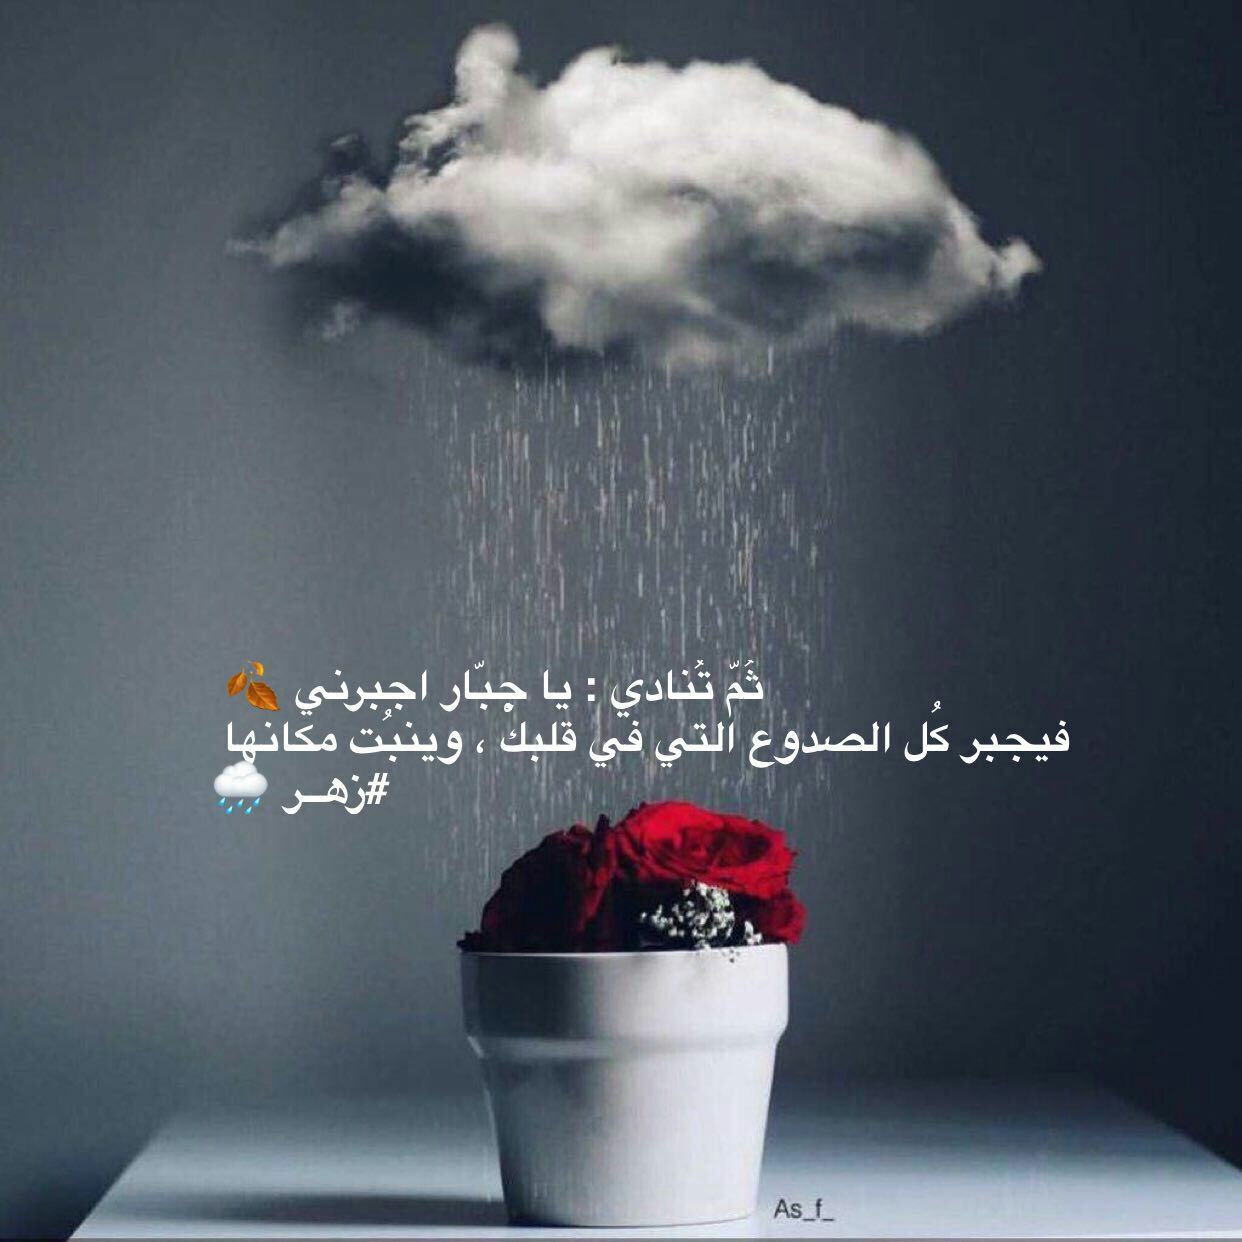 كلمات جميلة عن المطر كلام قصير عن الامطار والشتاء عبارات حب للمطر مجلة رجيم